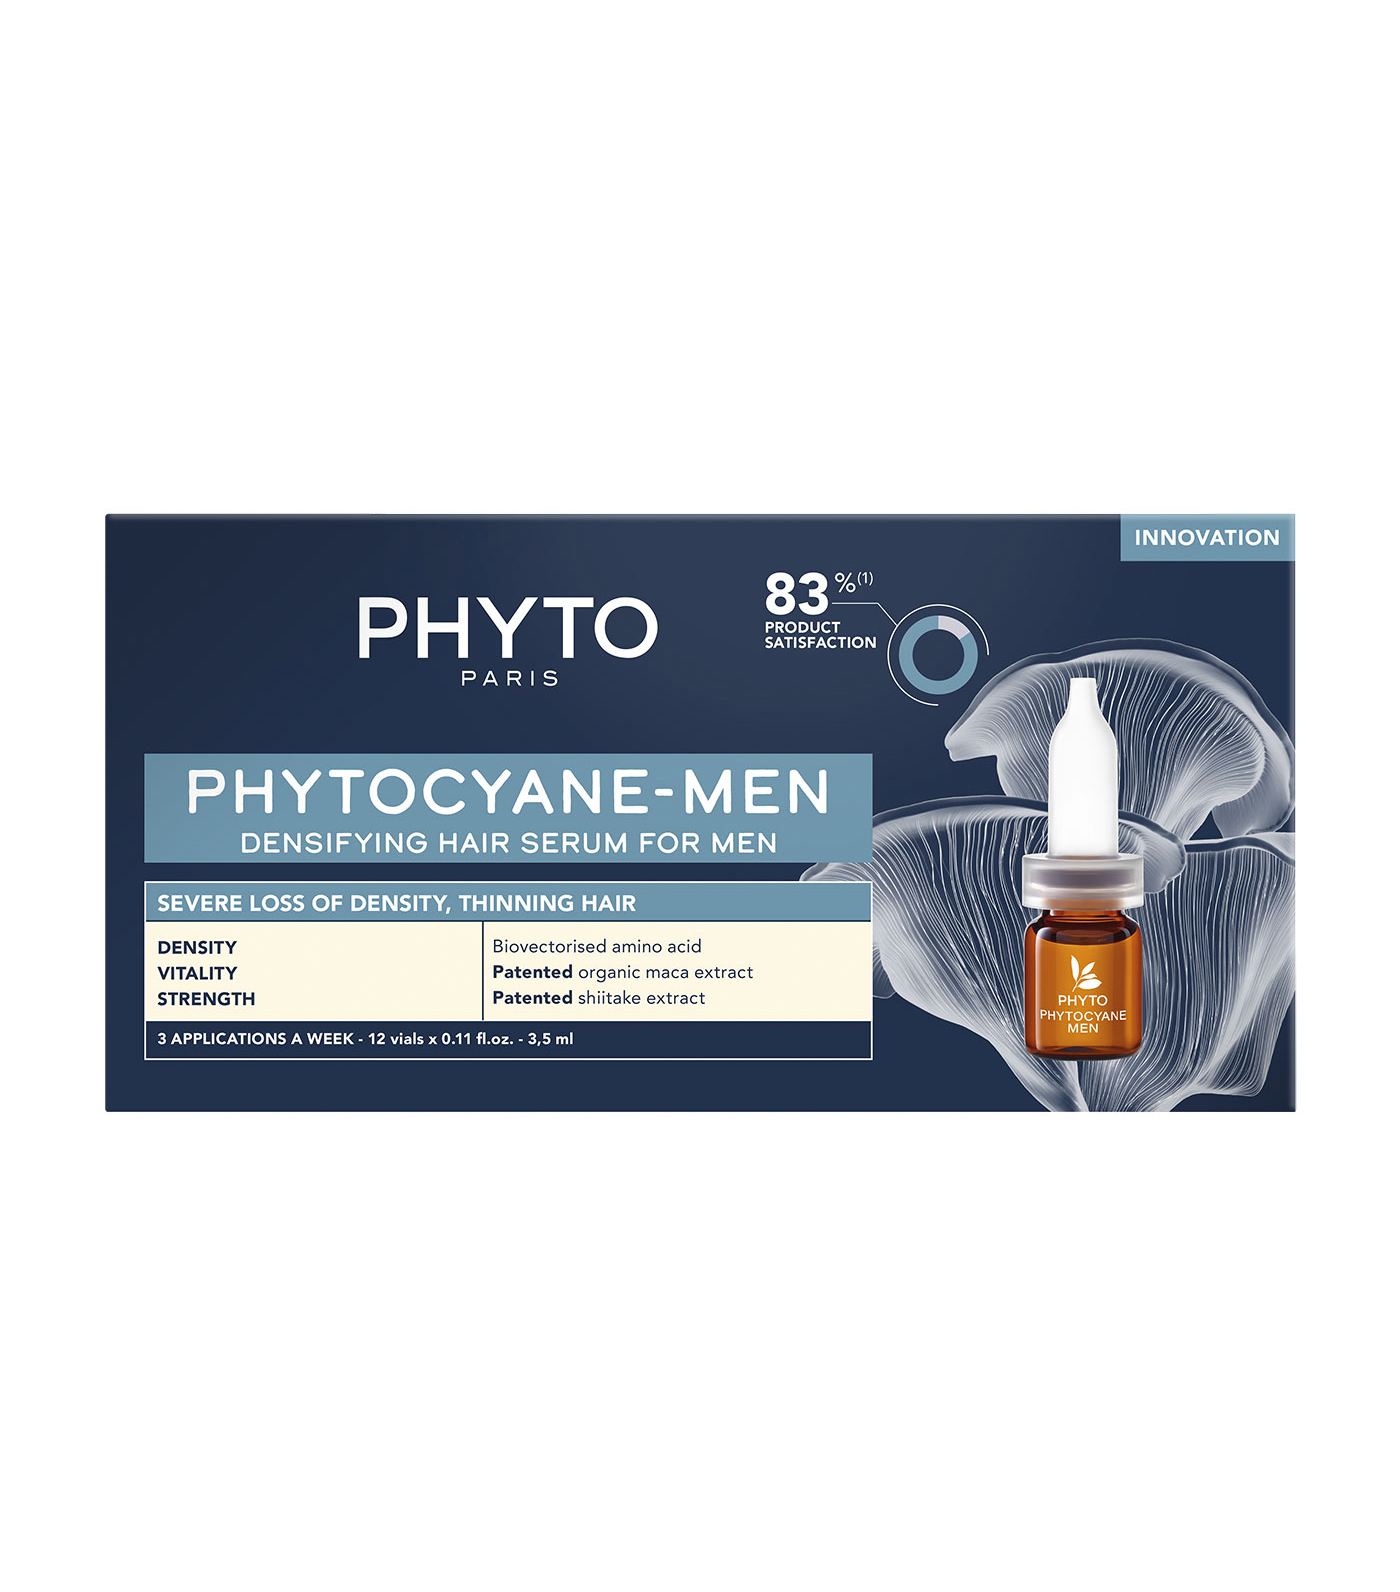 CYANE-Men Densifying Hair Serum for Men